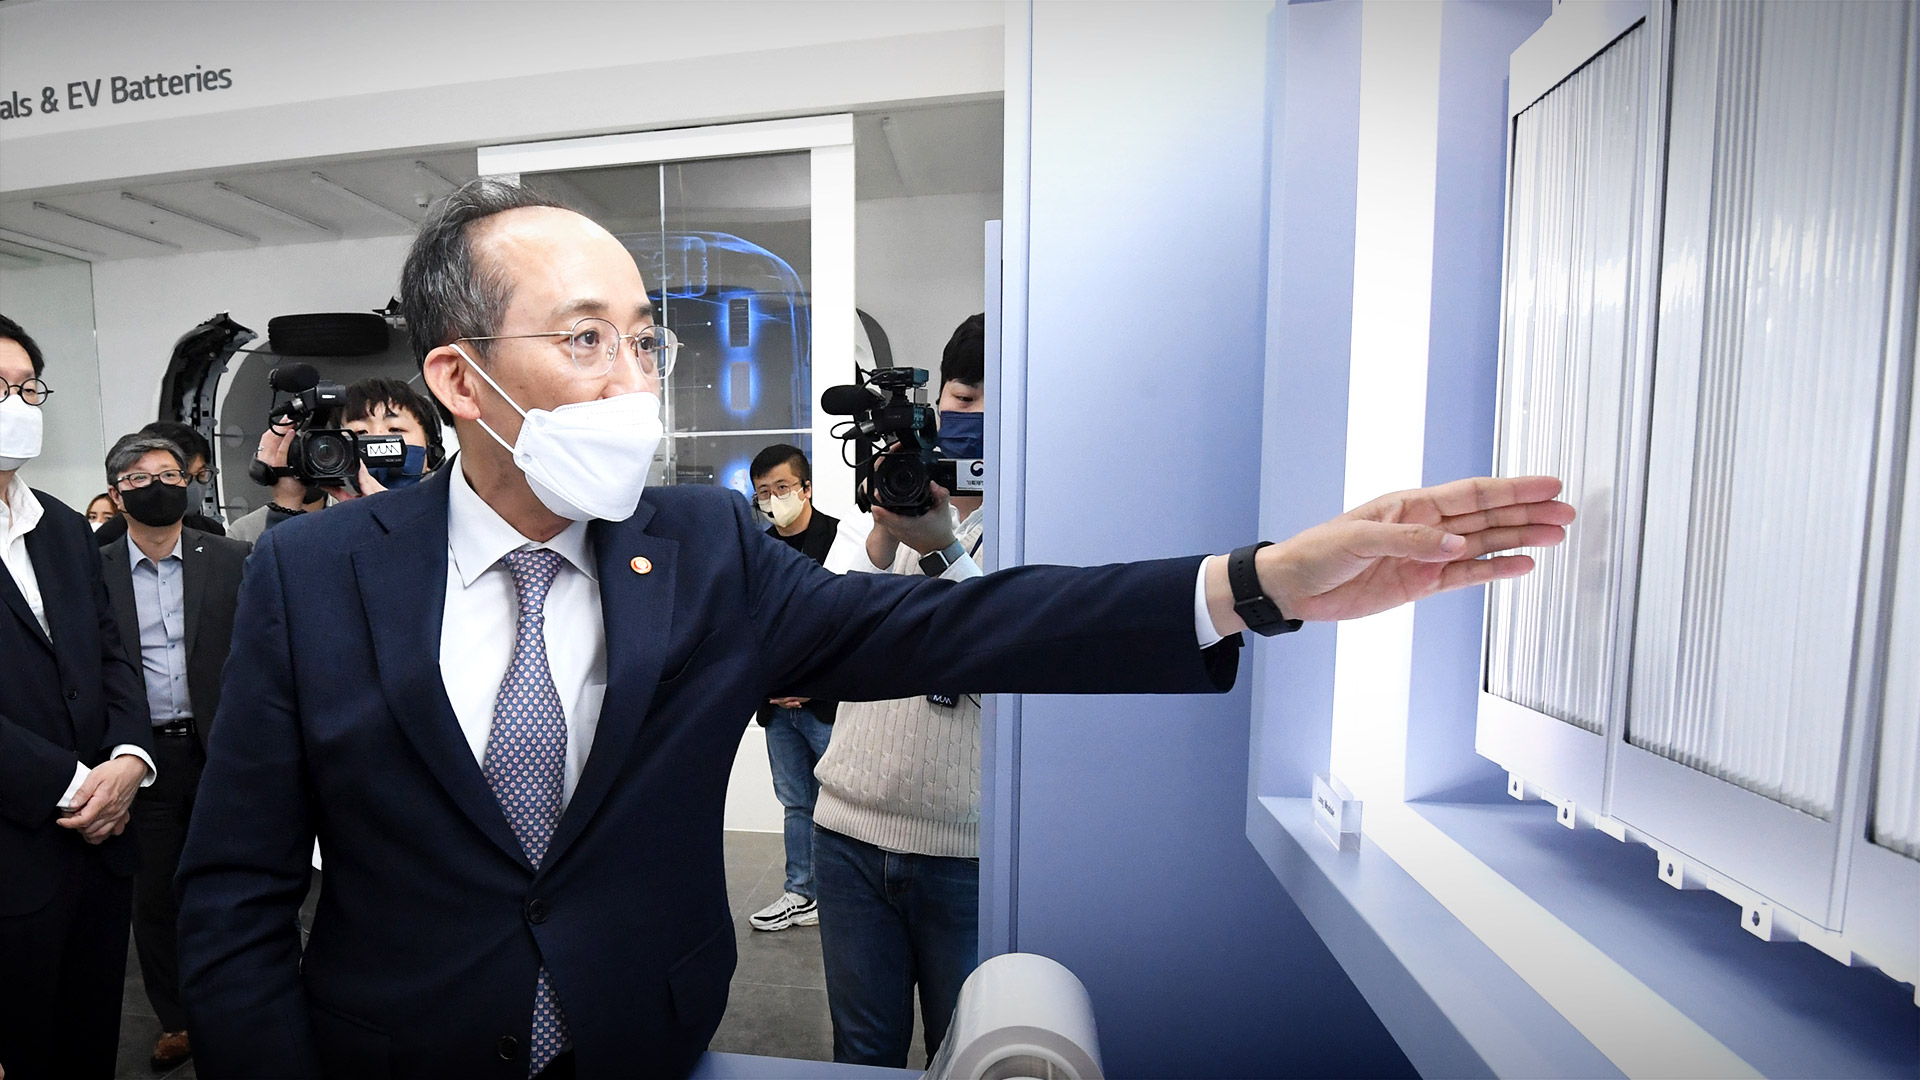 추경호 부총리 겸 기획재정부 장관은 11월 25일 서울 강서구 소재 LG에너지솔루션  마곡 R&D 캠퍼스를 방문하여 업계 및 유관기관 관계자들과 간담회를 개최하였습니다.